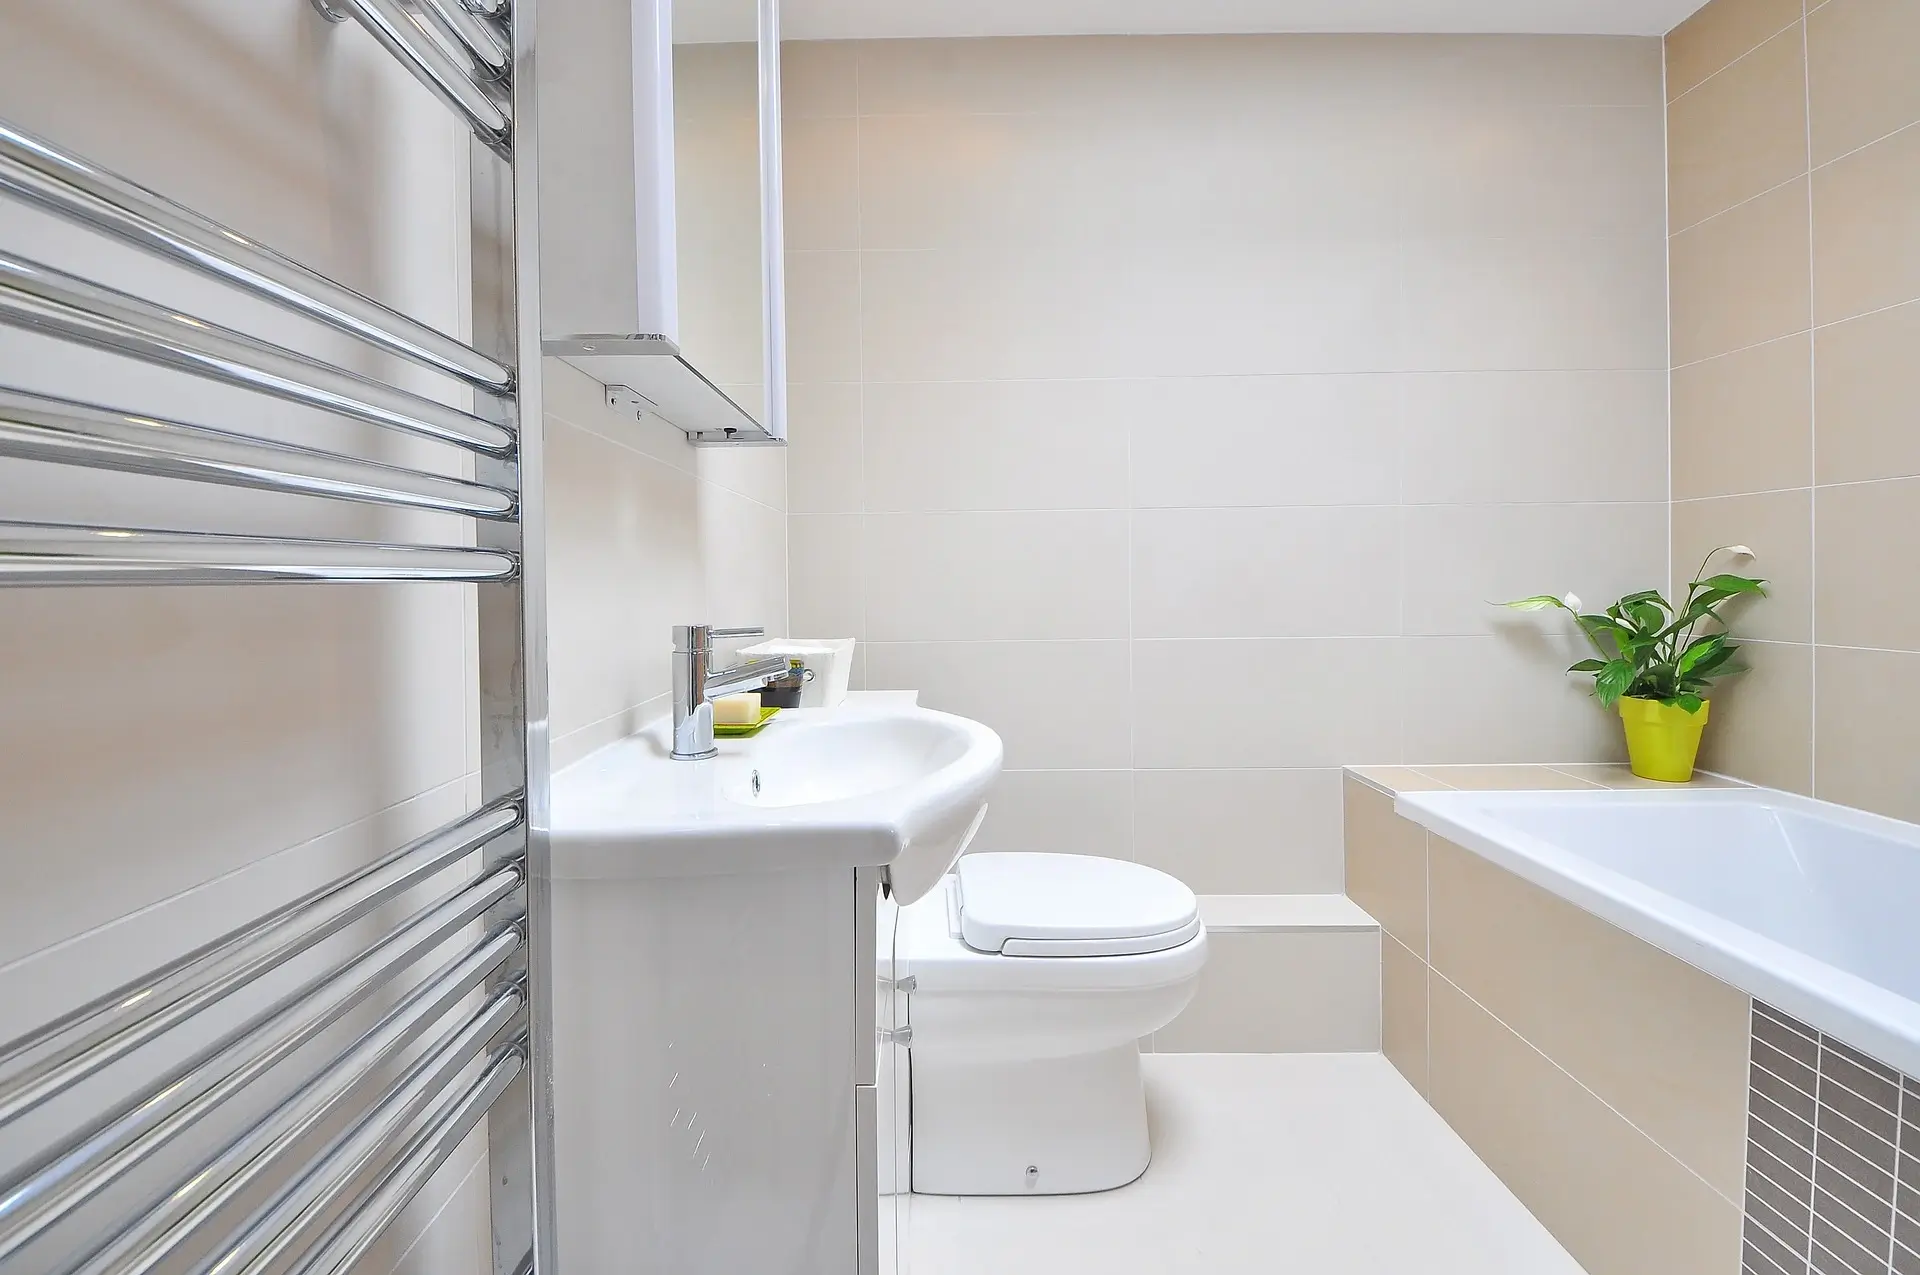 Fürdőszoba burkolás megfizethető árakon, kiváló referenciákkal. Kérjen helyszíni felmérést még ma!